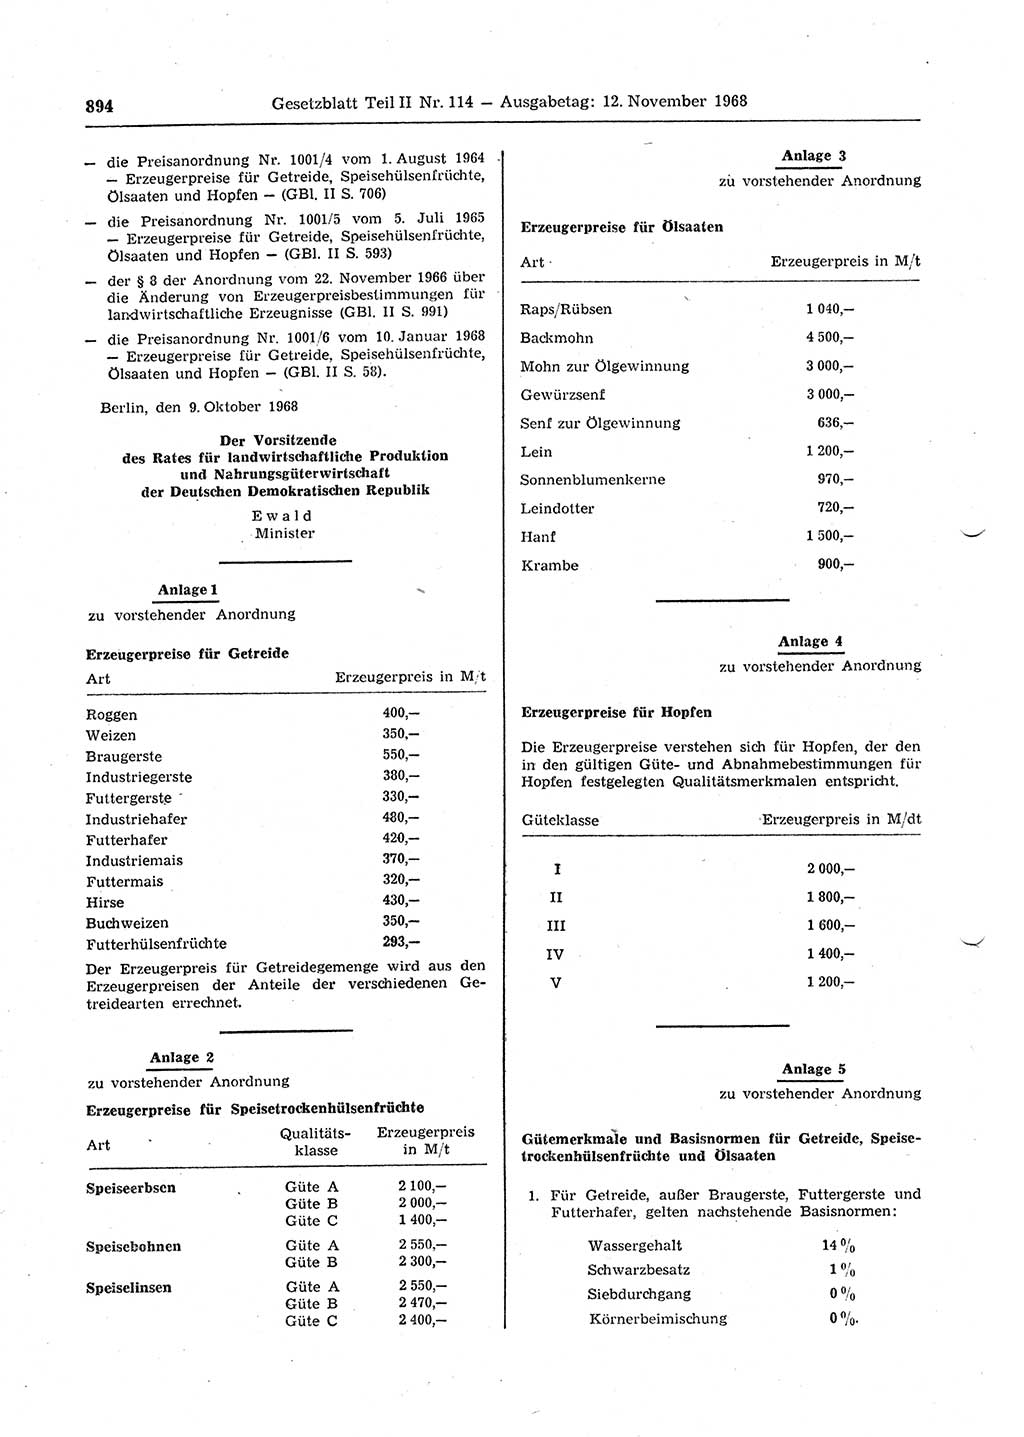 Gesetzblatt (GBl.) der Deutschen Demokratischen Republik (DDR) Teil ⅠⅠ 1968, Seite 894 (GBl. DDR ⅠⅠ 1968, S. 894)